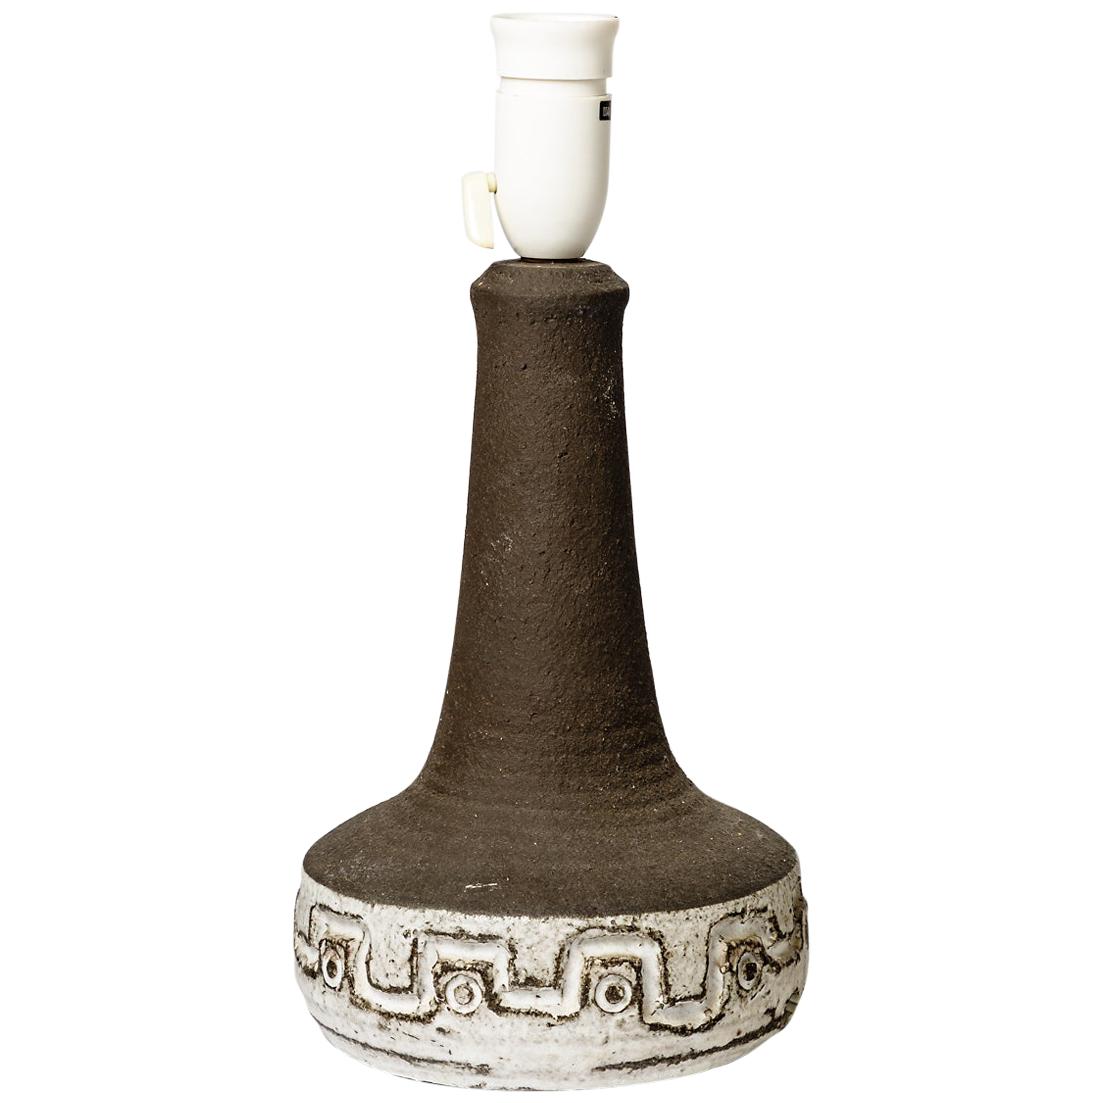 Schwarz-weiße Steingut-Keramik-Tischlampe, um 1970, französisches Design